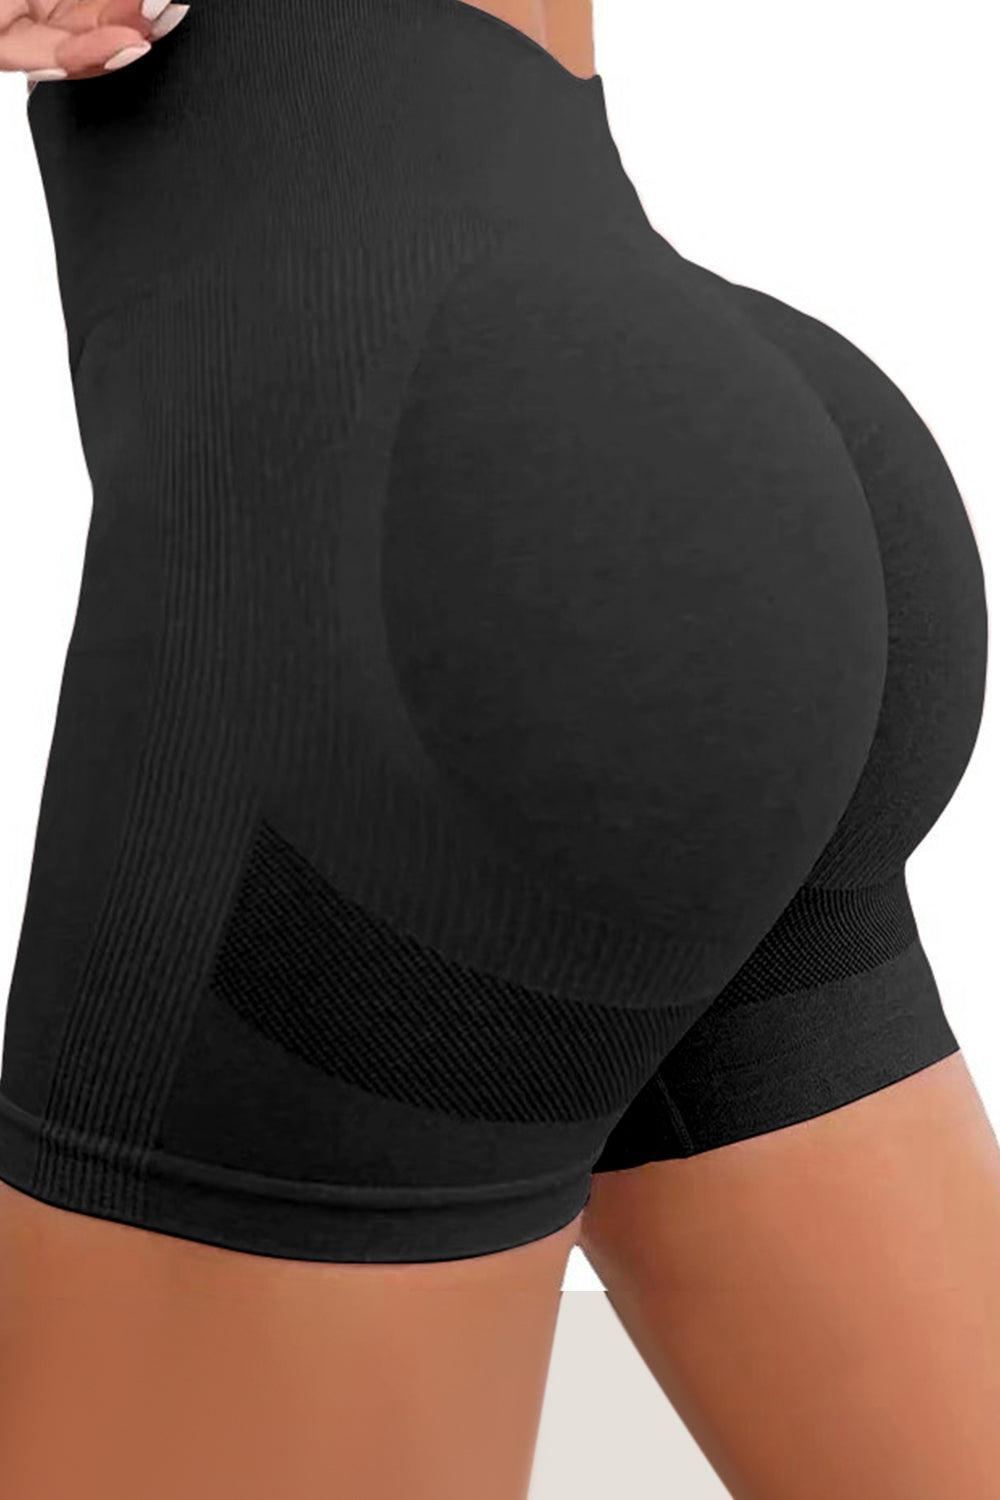 a woman's butt showing her butt and butt